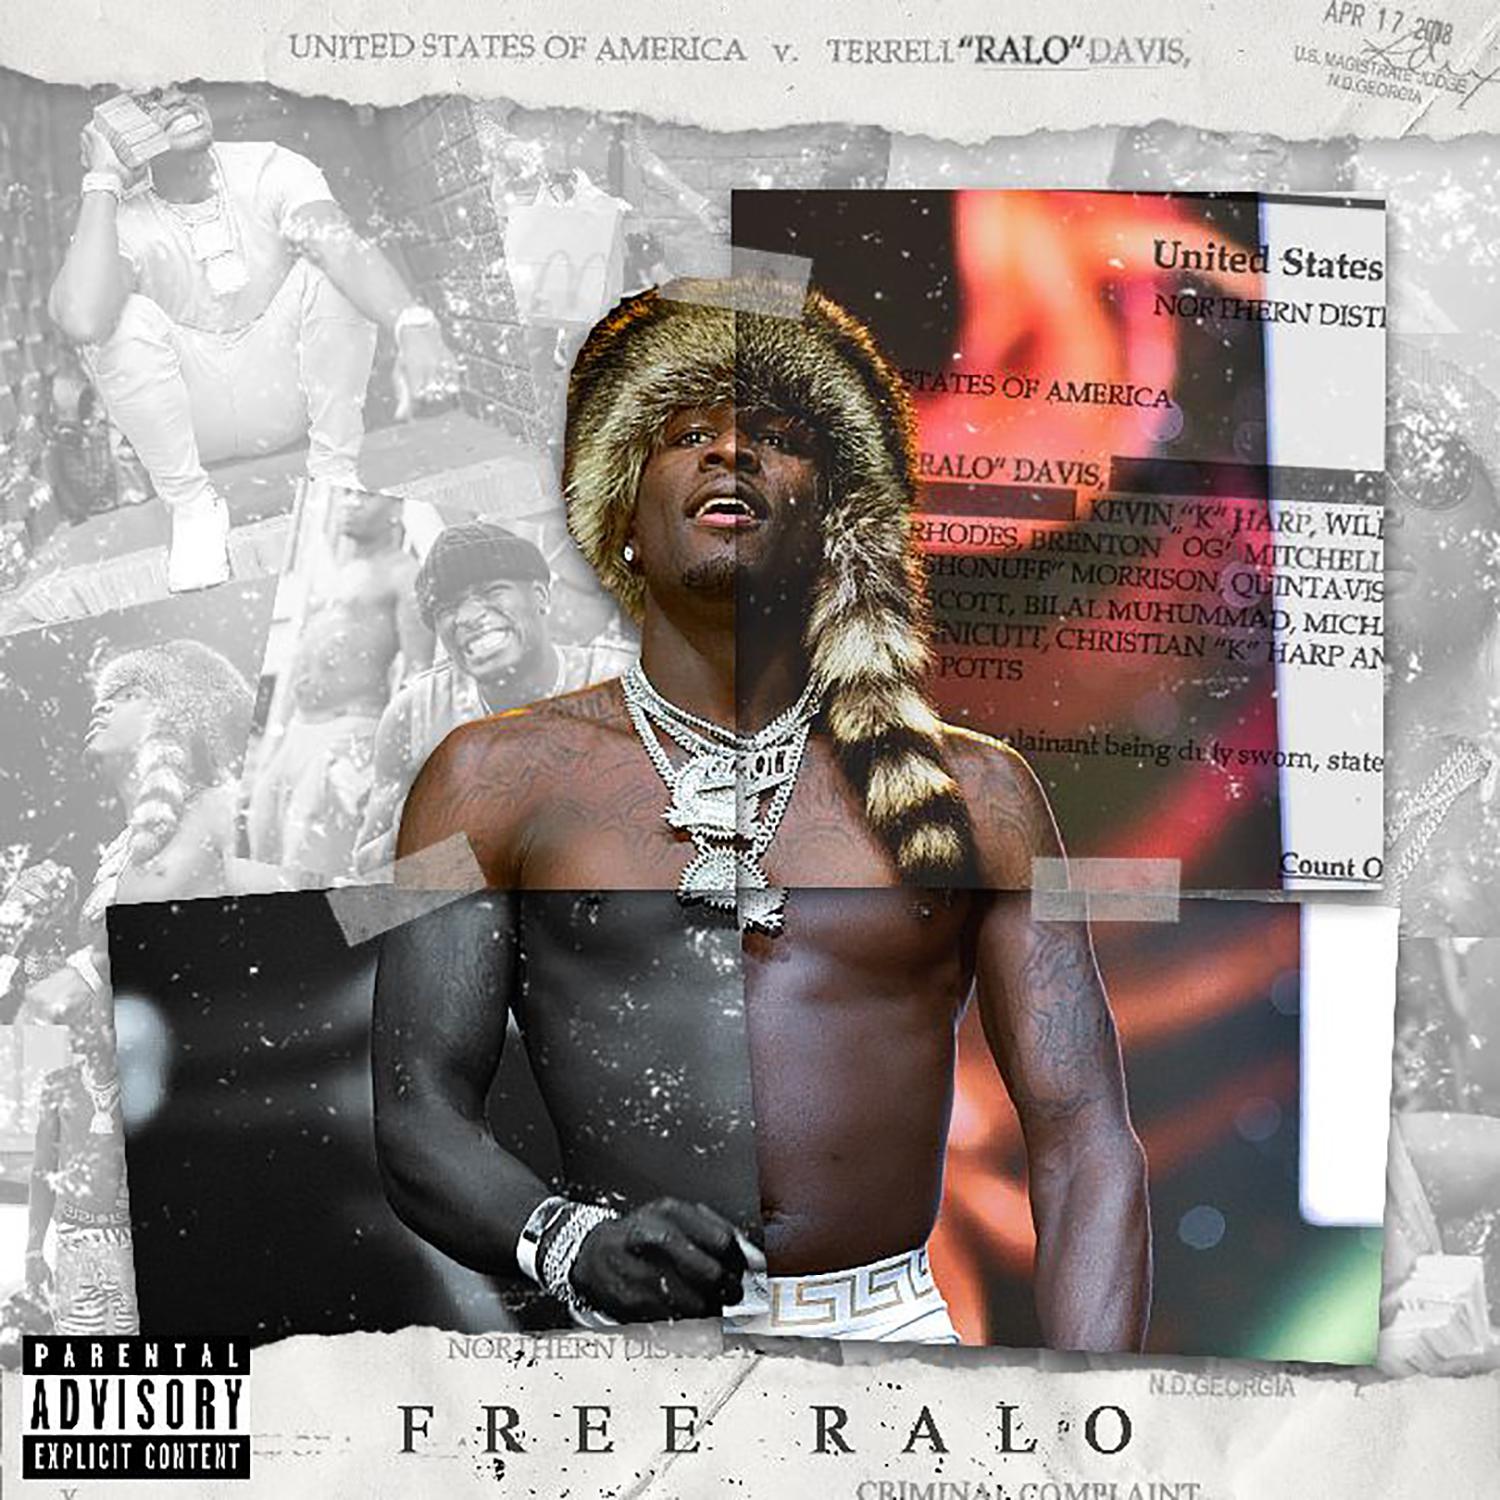 Free Ralo